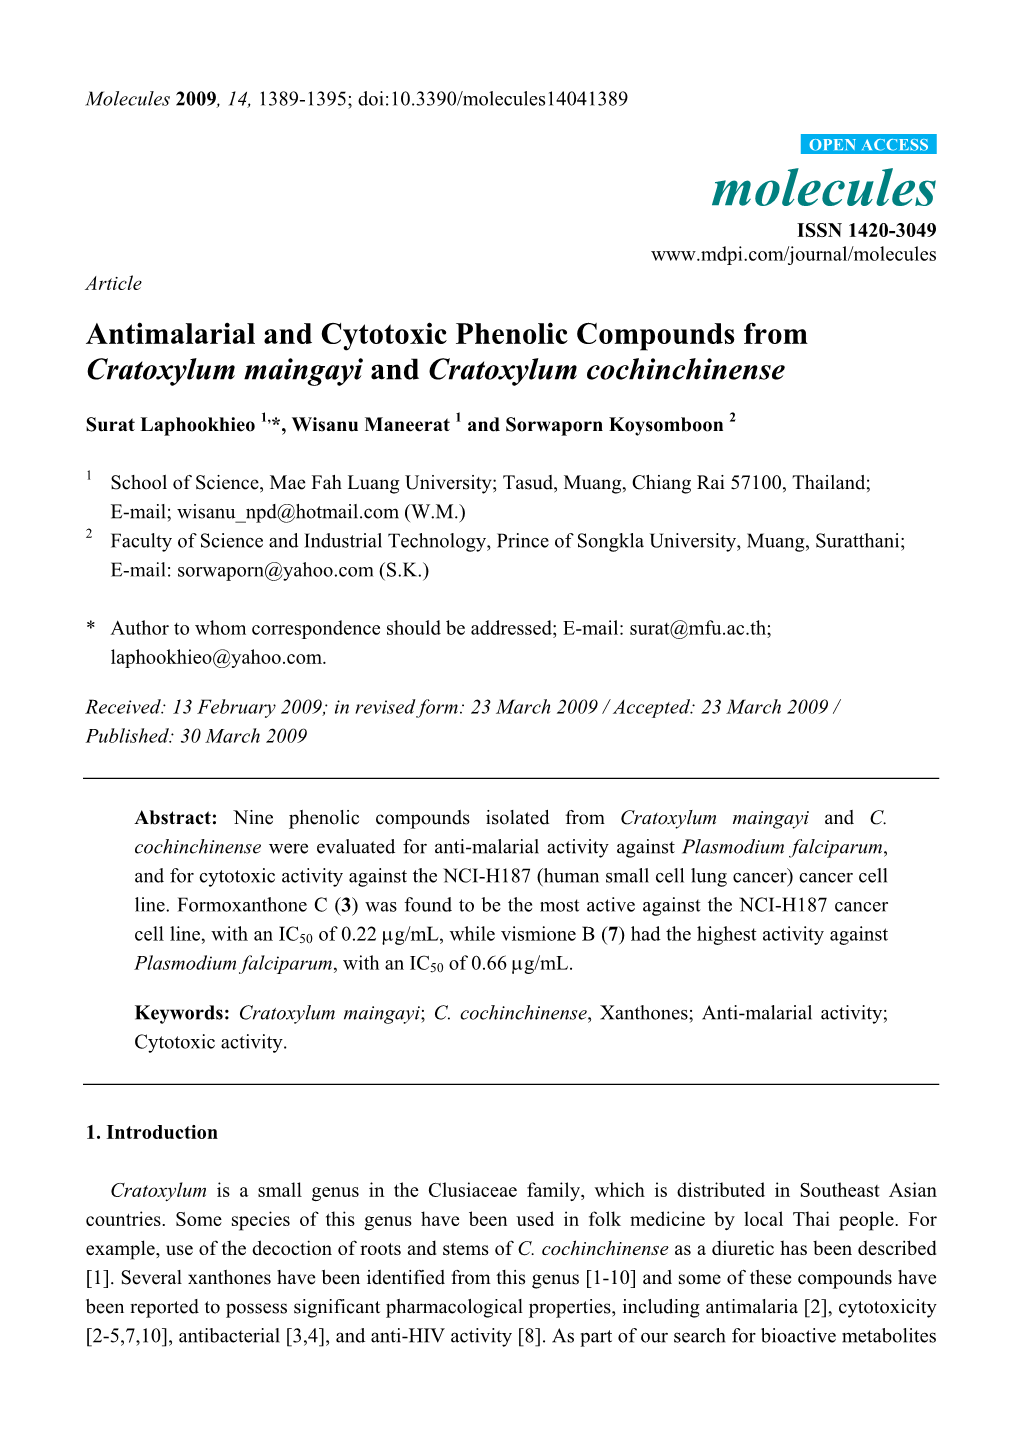 Antimalarial and Cytotoxic Phenolic Compounds from Cratoxylum Maingayi and Cratoxylum Cochinchinense